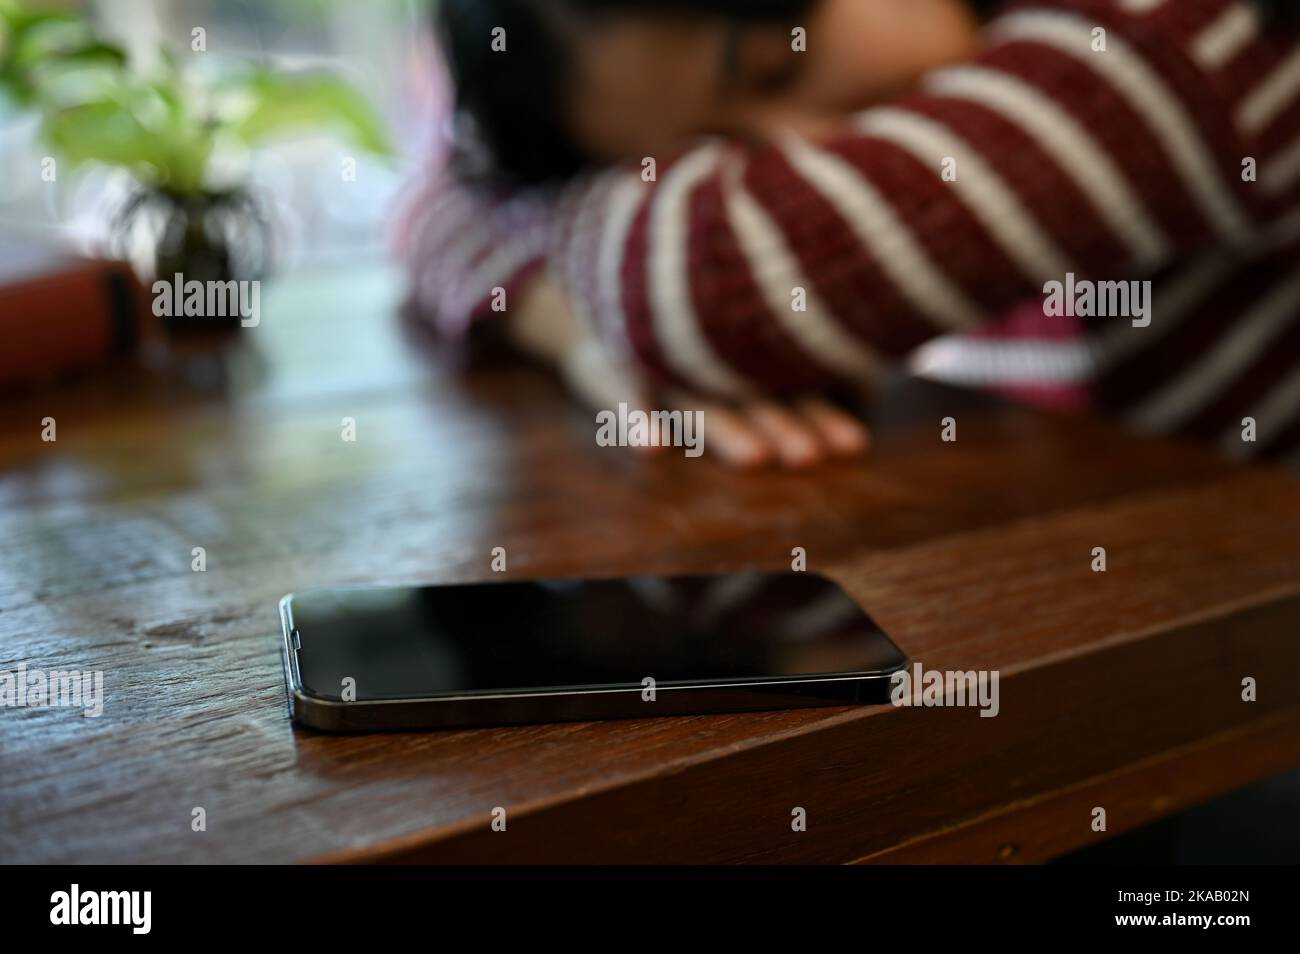 Un smartphone se trouve sur une table en bois sur un fond flou de jeune femme asiatique fatiguée qui la pose la tête ou qui la met à la table. Image de mise au point sélective Banque D'Images